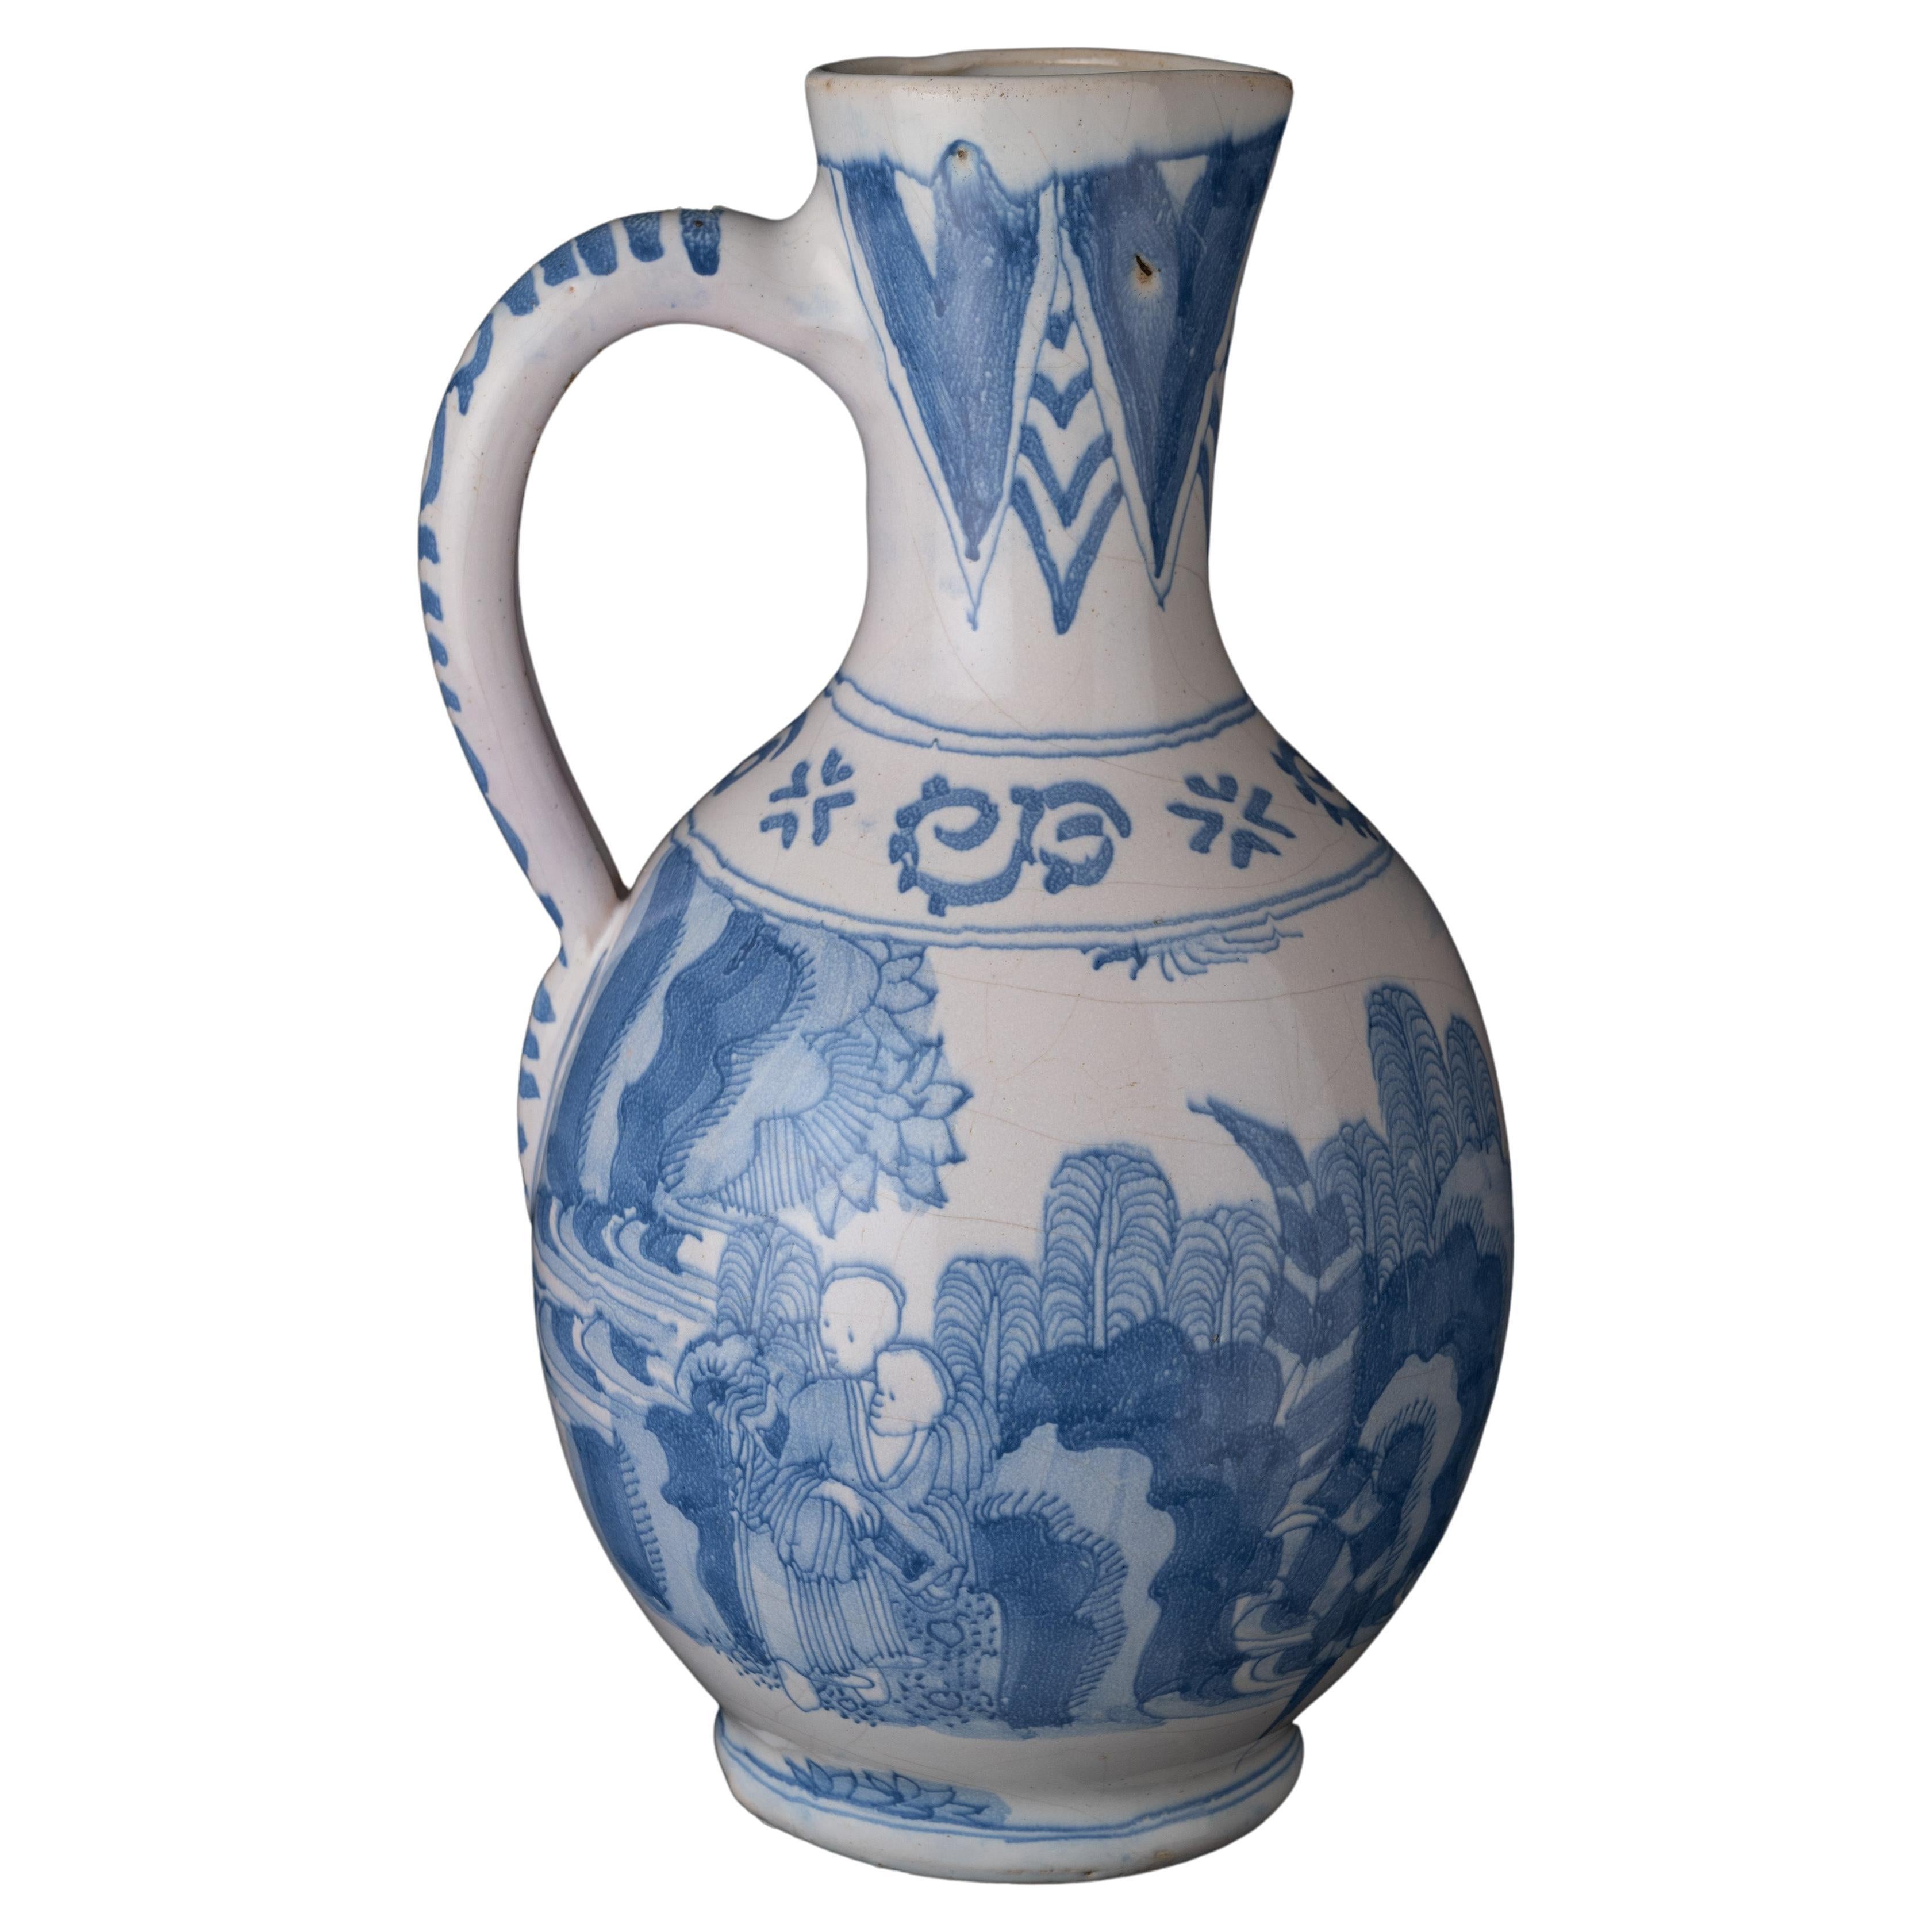 Pichet à vin en porcelaine de Delft bleu et blanc de style chinoiserie, 1650-1670